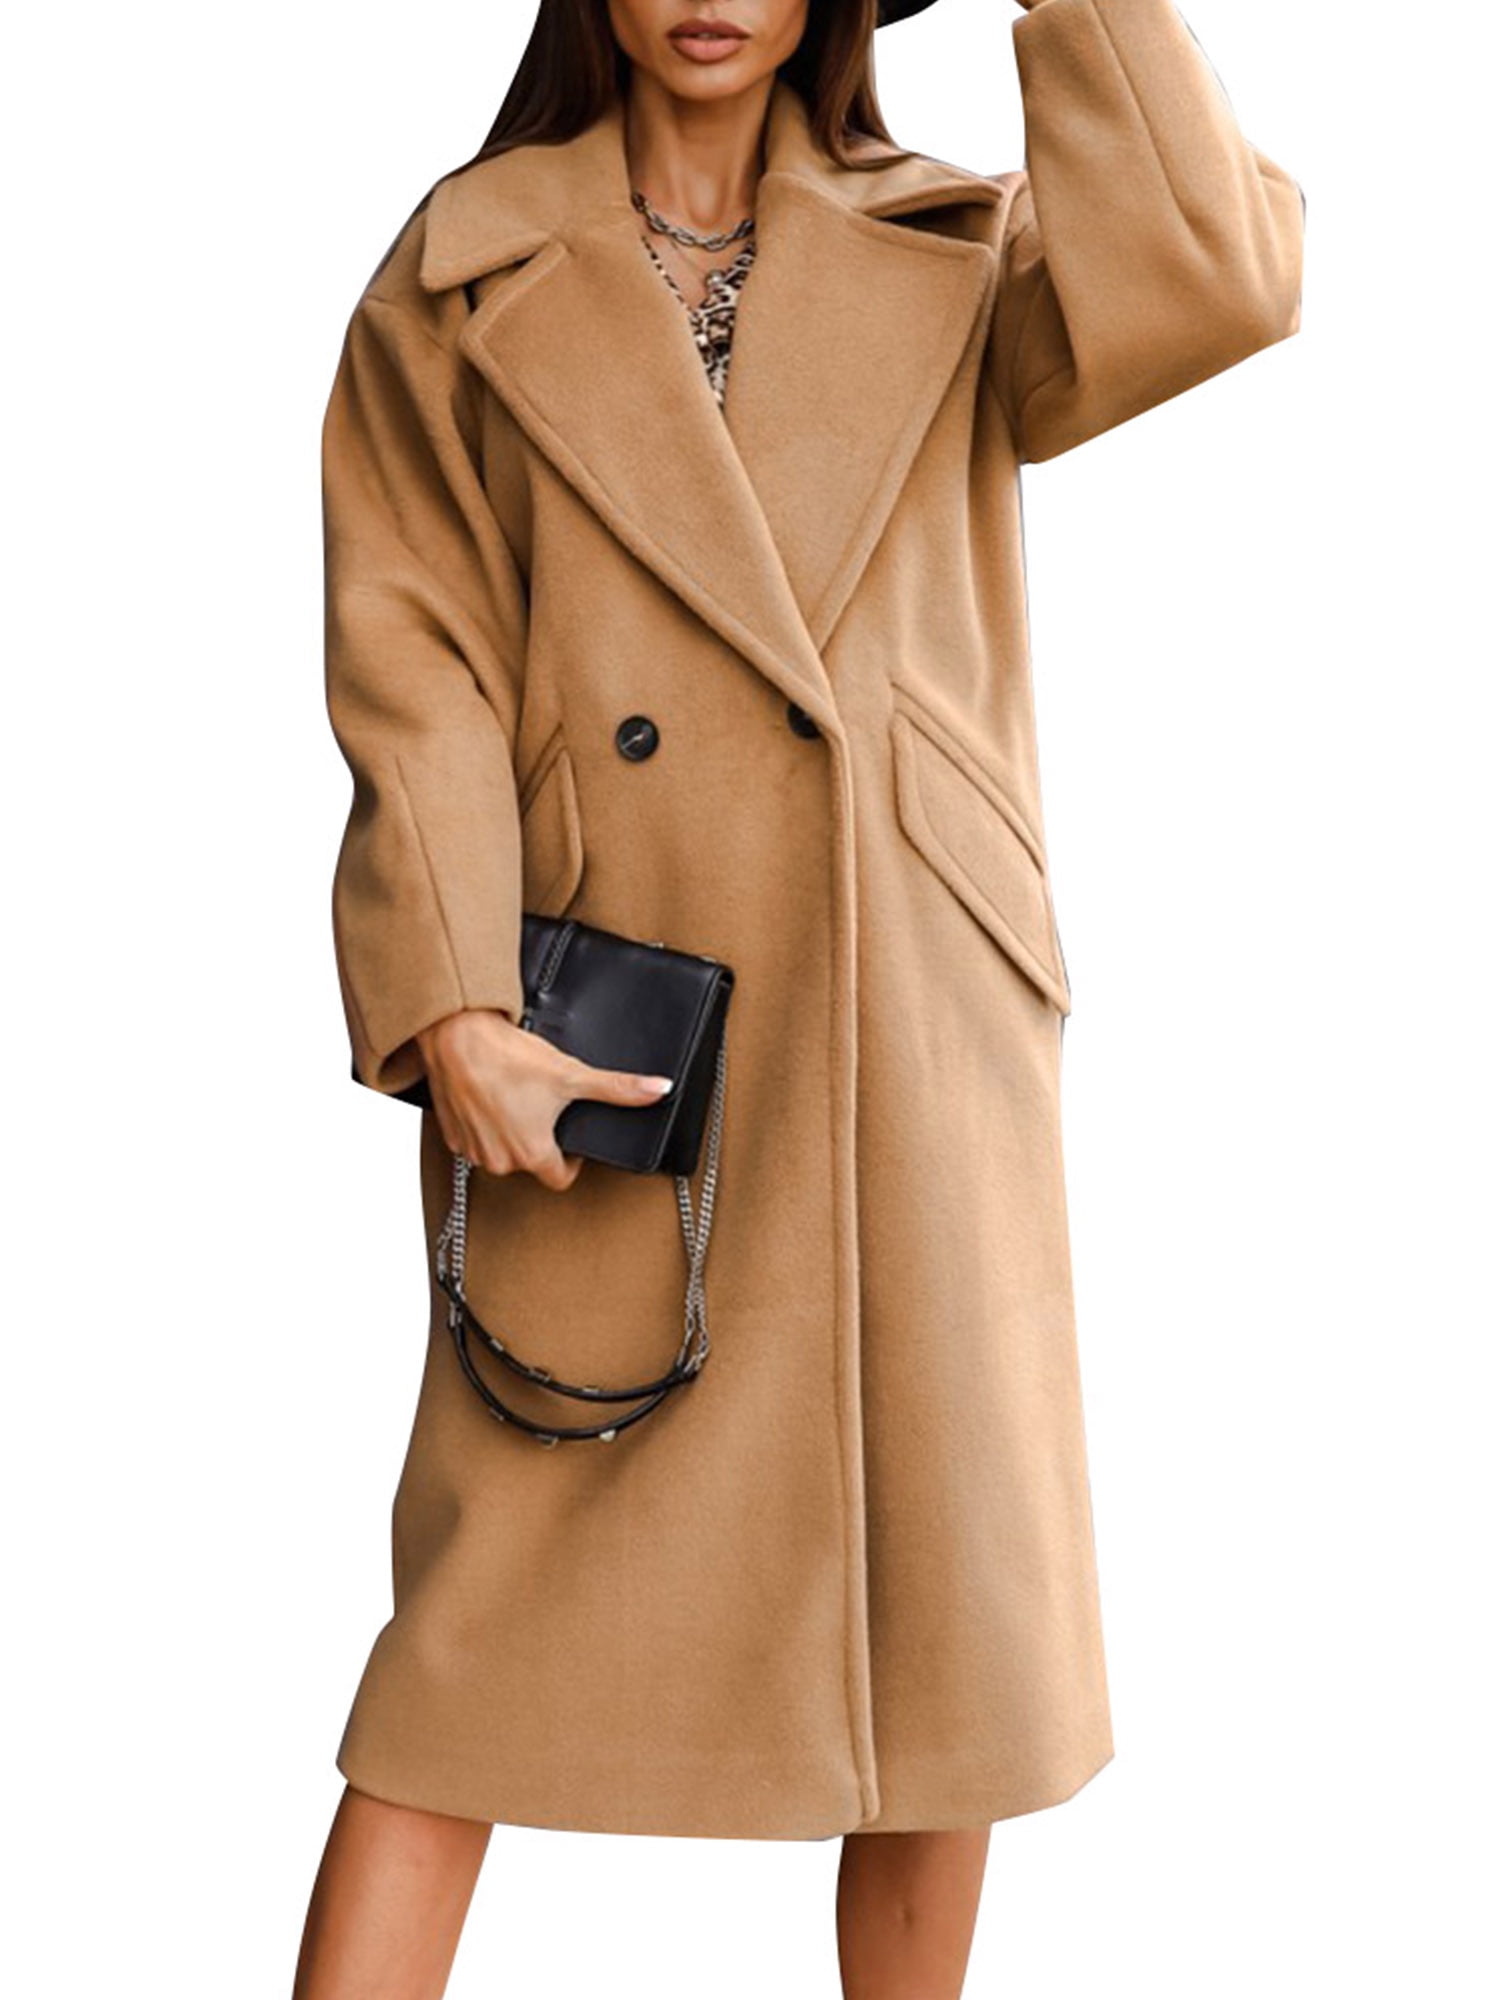 Women Winter Warm Woolen Lapel Long Coat Blazer Suit Trench Parka Jacket Outwear